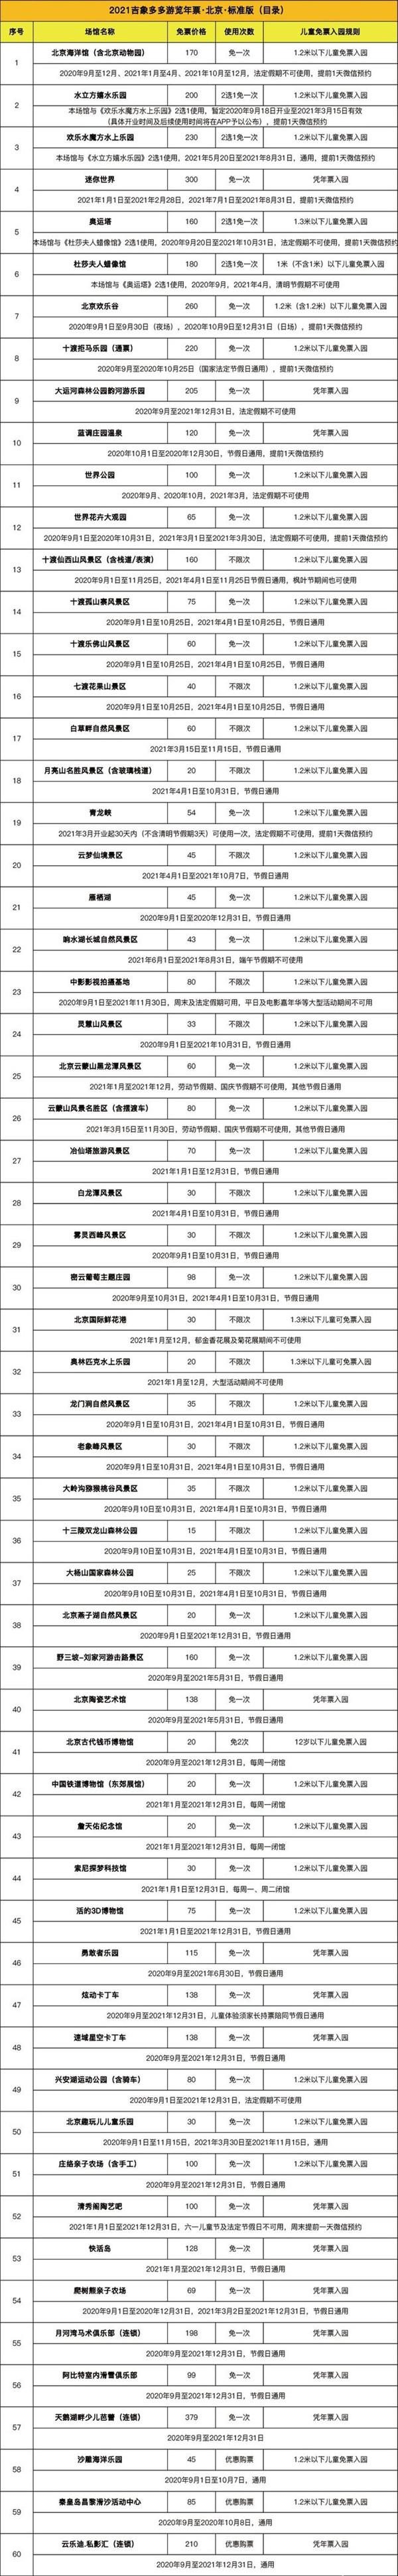 2020北京吉象多多年票标准版和青春版景区名单-使用指南